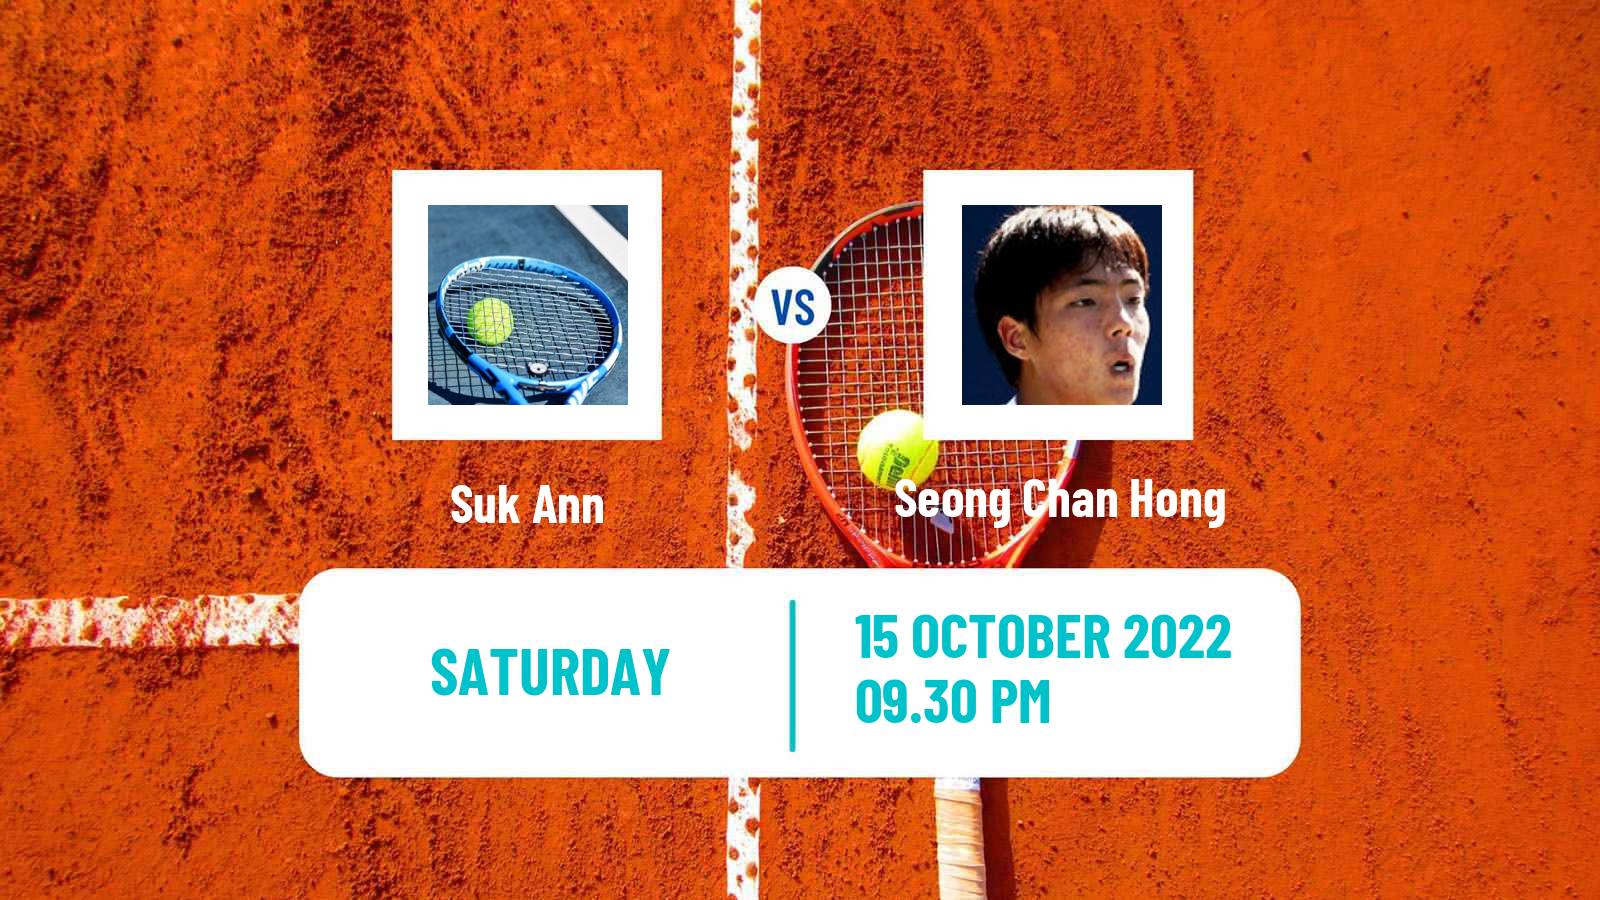 Tennis ATP Challenger Suk Ann - Seong Chan Hong